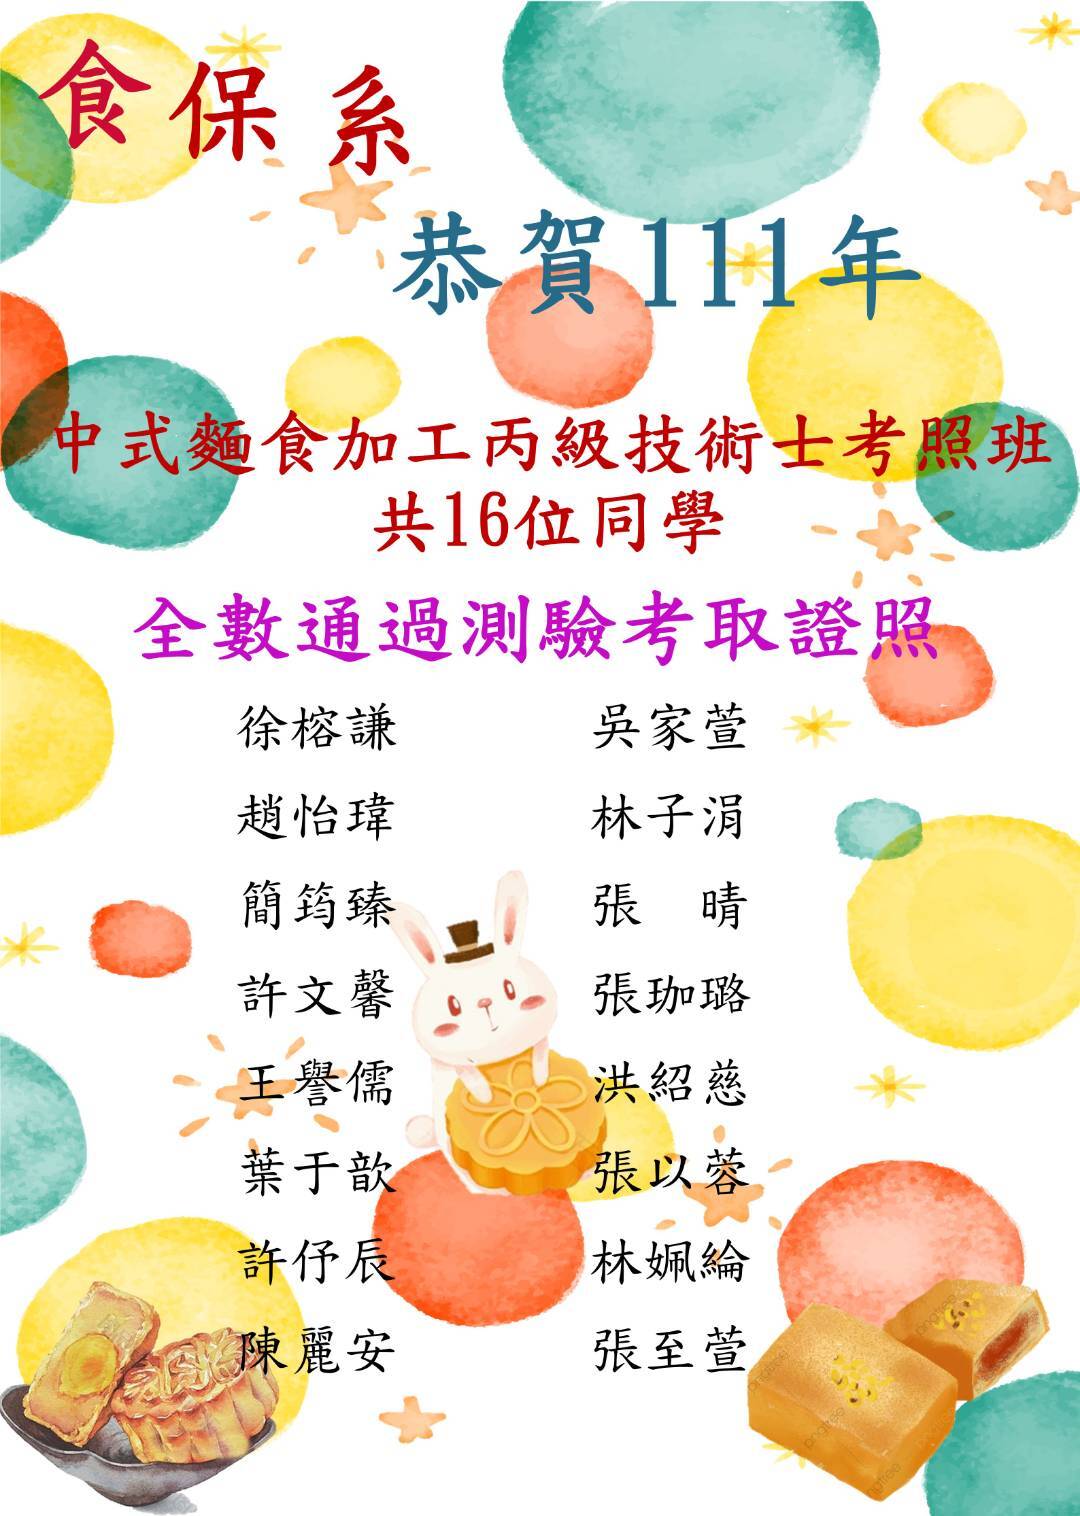 111中式麵食加工榜單